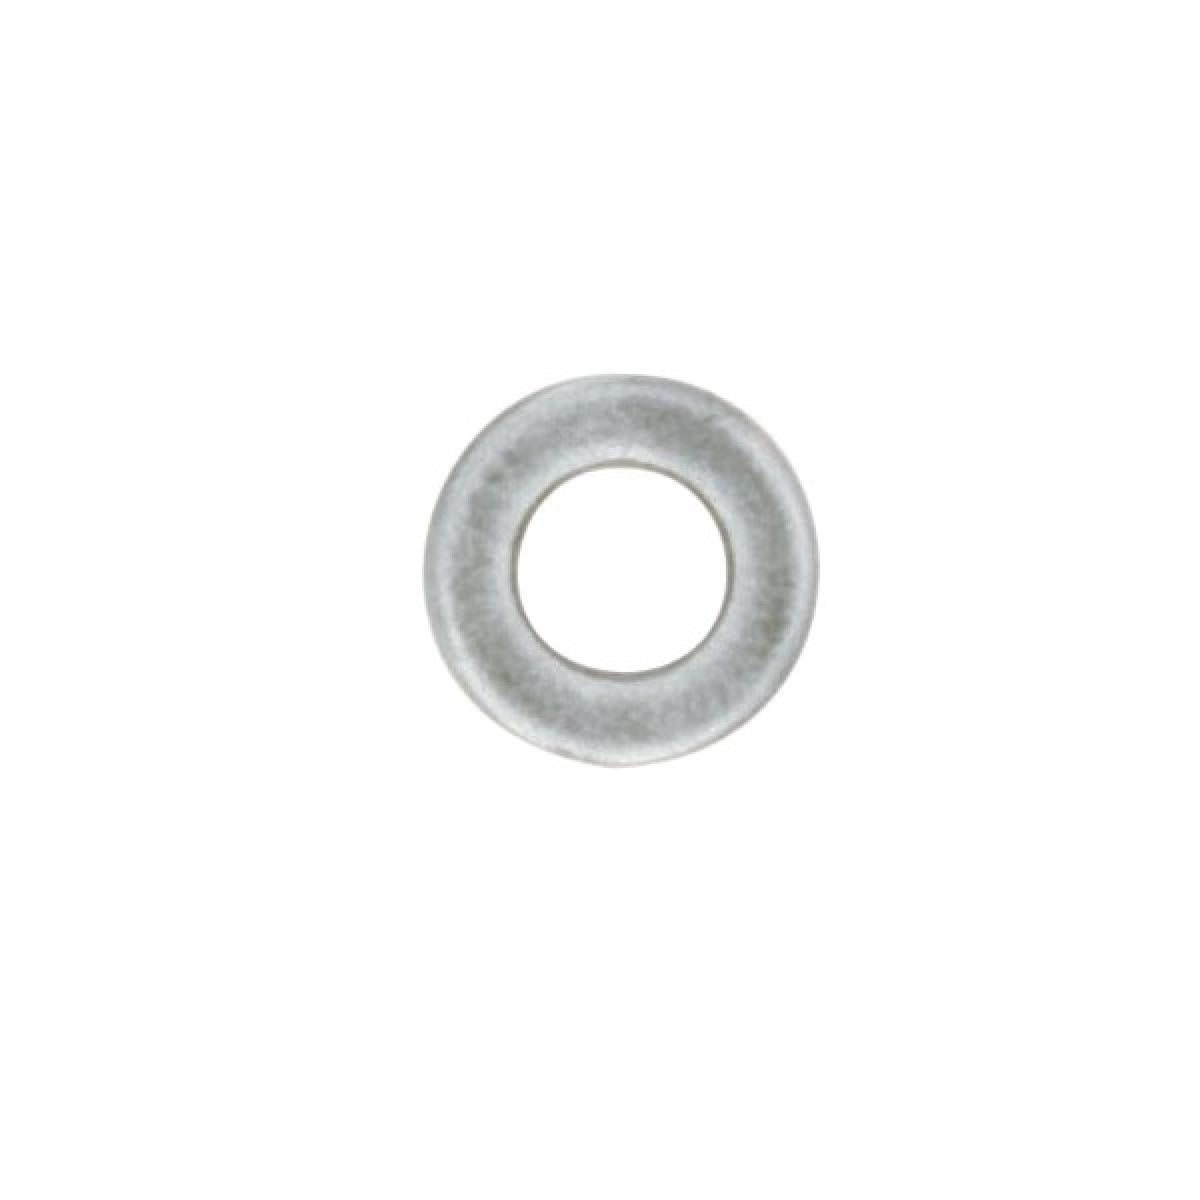 Satco 90-1653 Steel Washer 1/4 IP Slip 18 Gauge Unfinished 1-3/4" Diameter